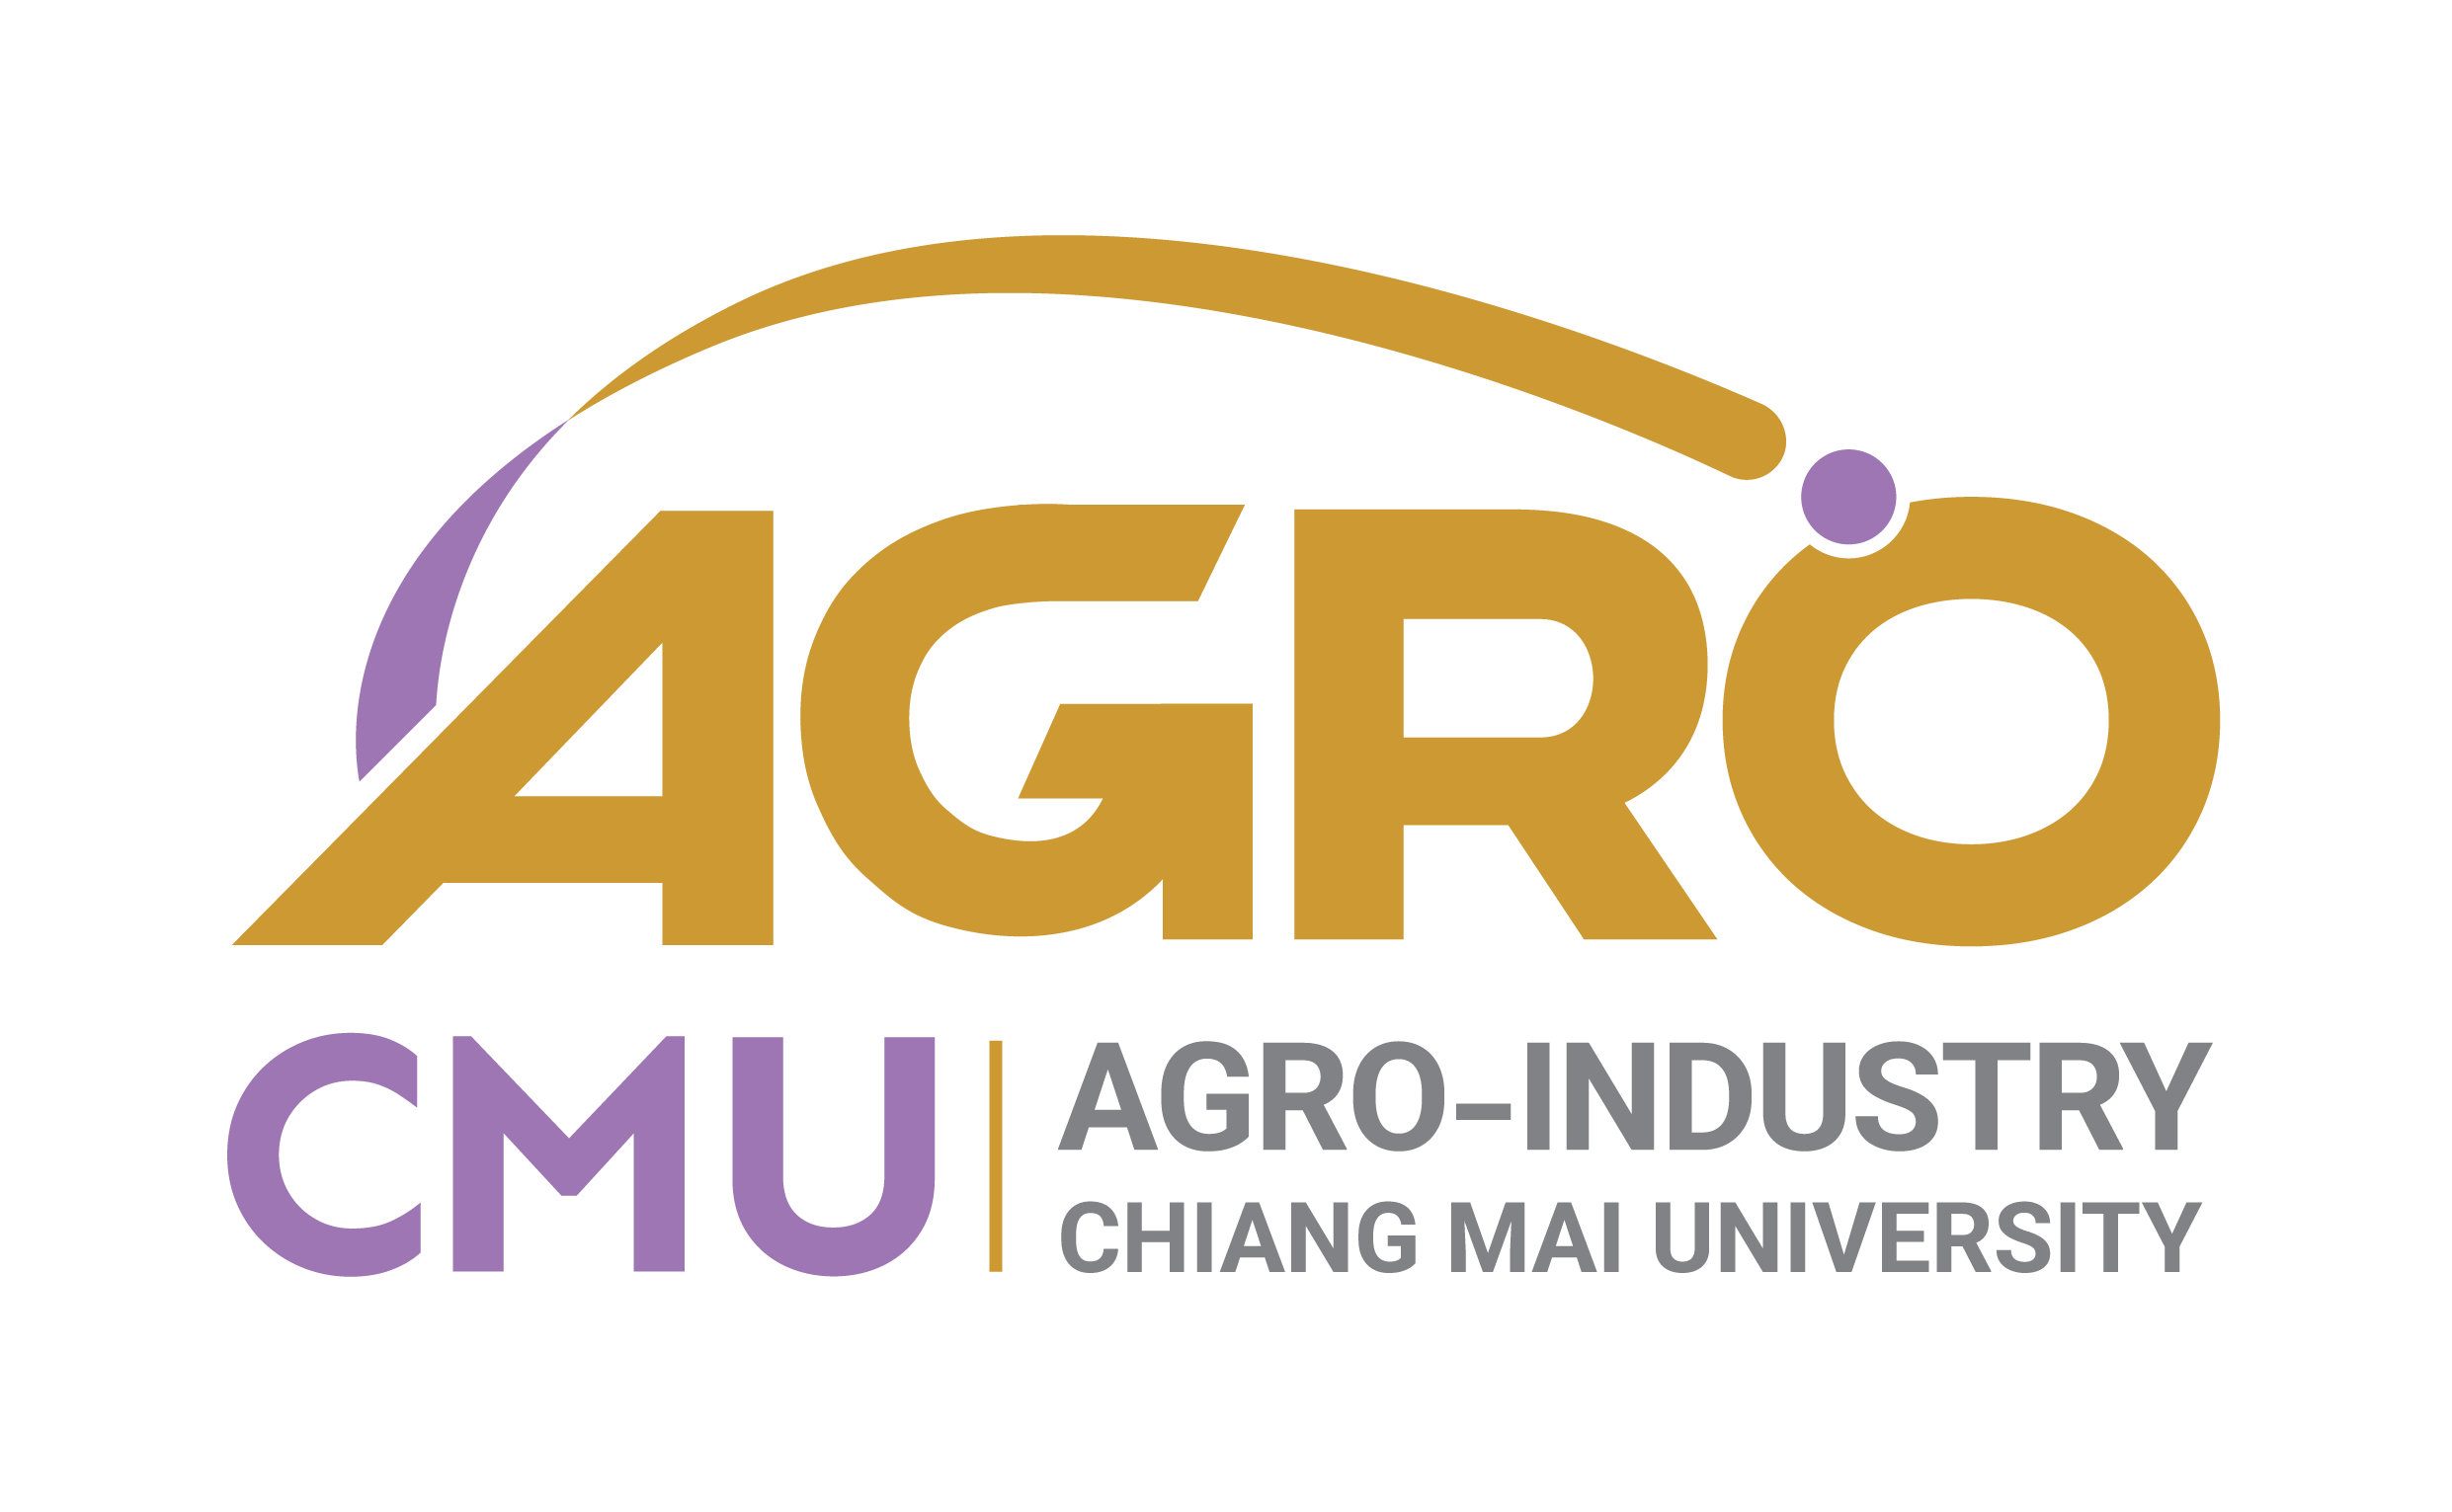 คณะอุตสาหกรรมเกษตร มหาวิทยาลัยเชียงใหม่ : Faculty of Agro-Industry, Chiang Mai University, THAILAND